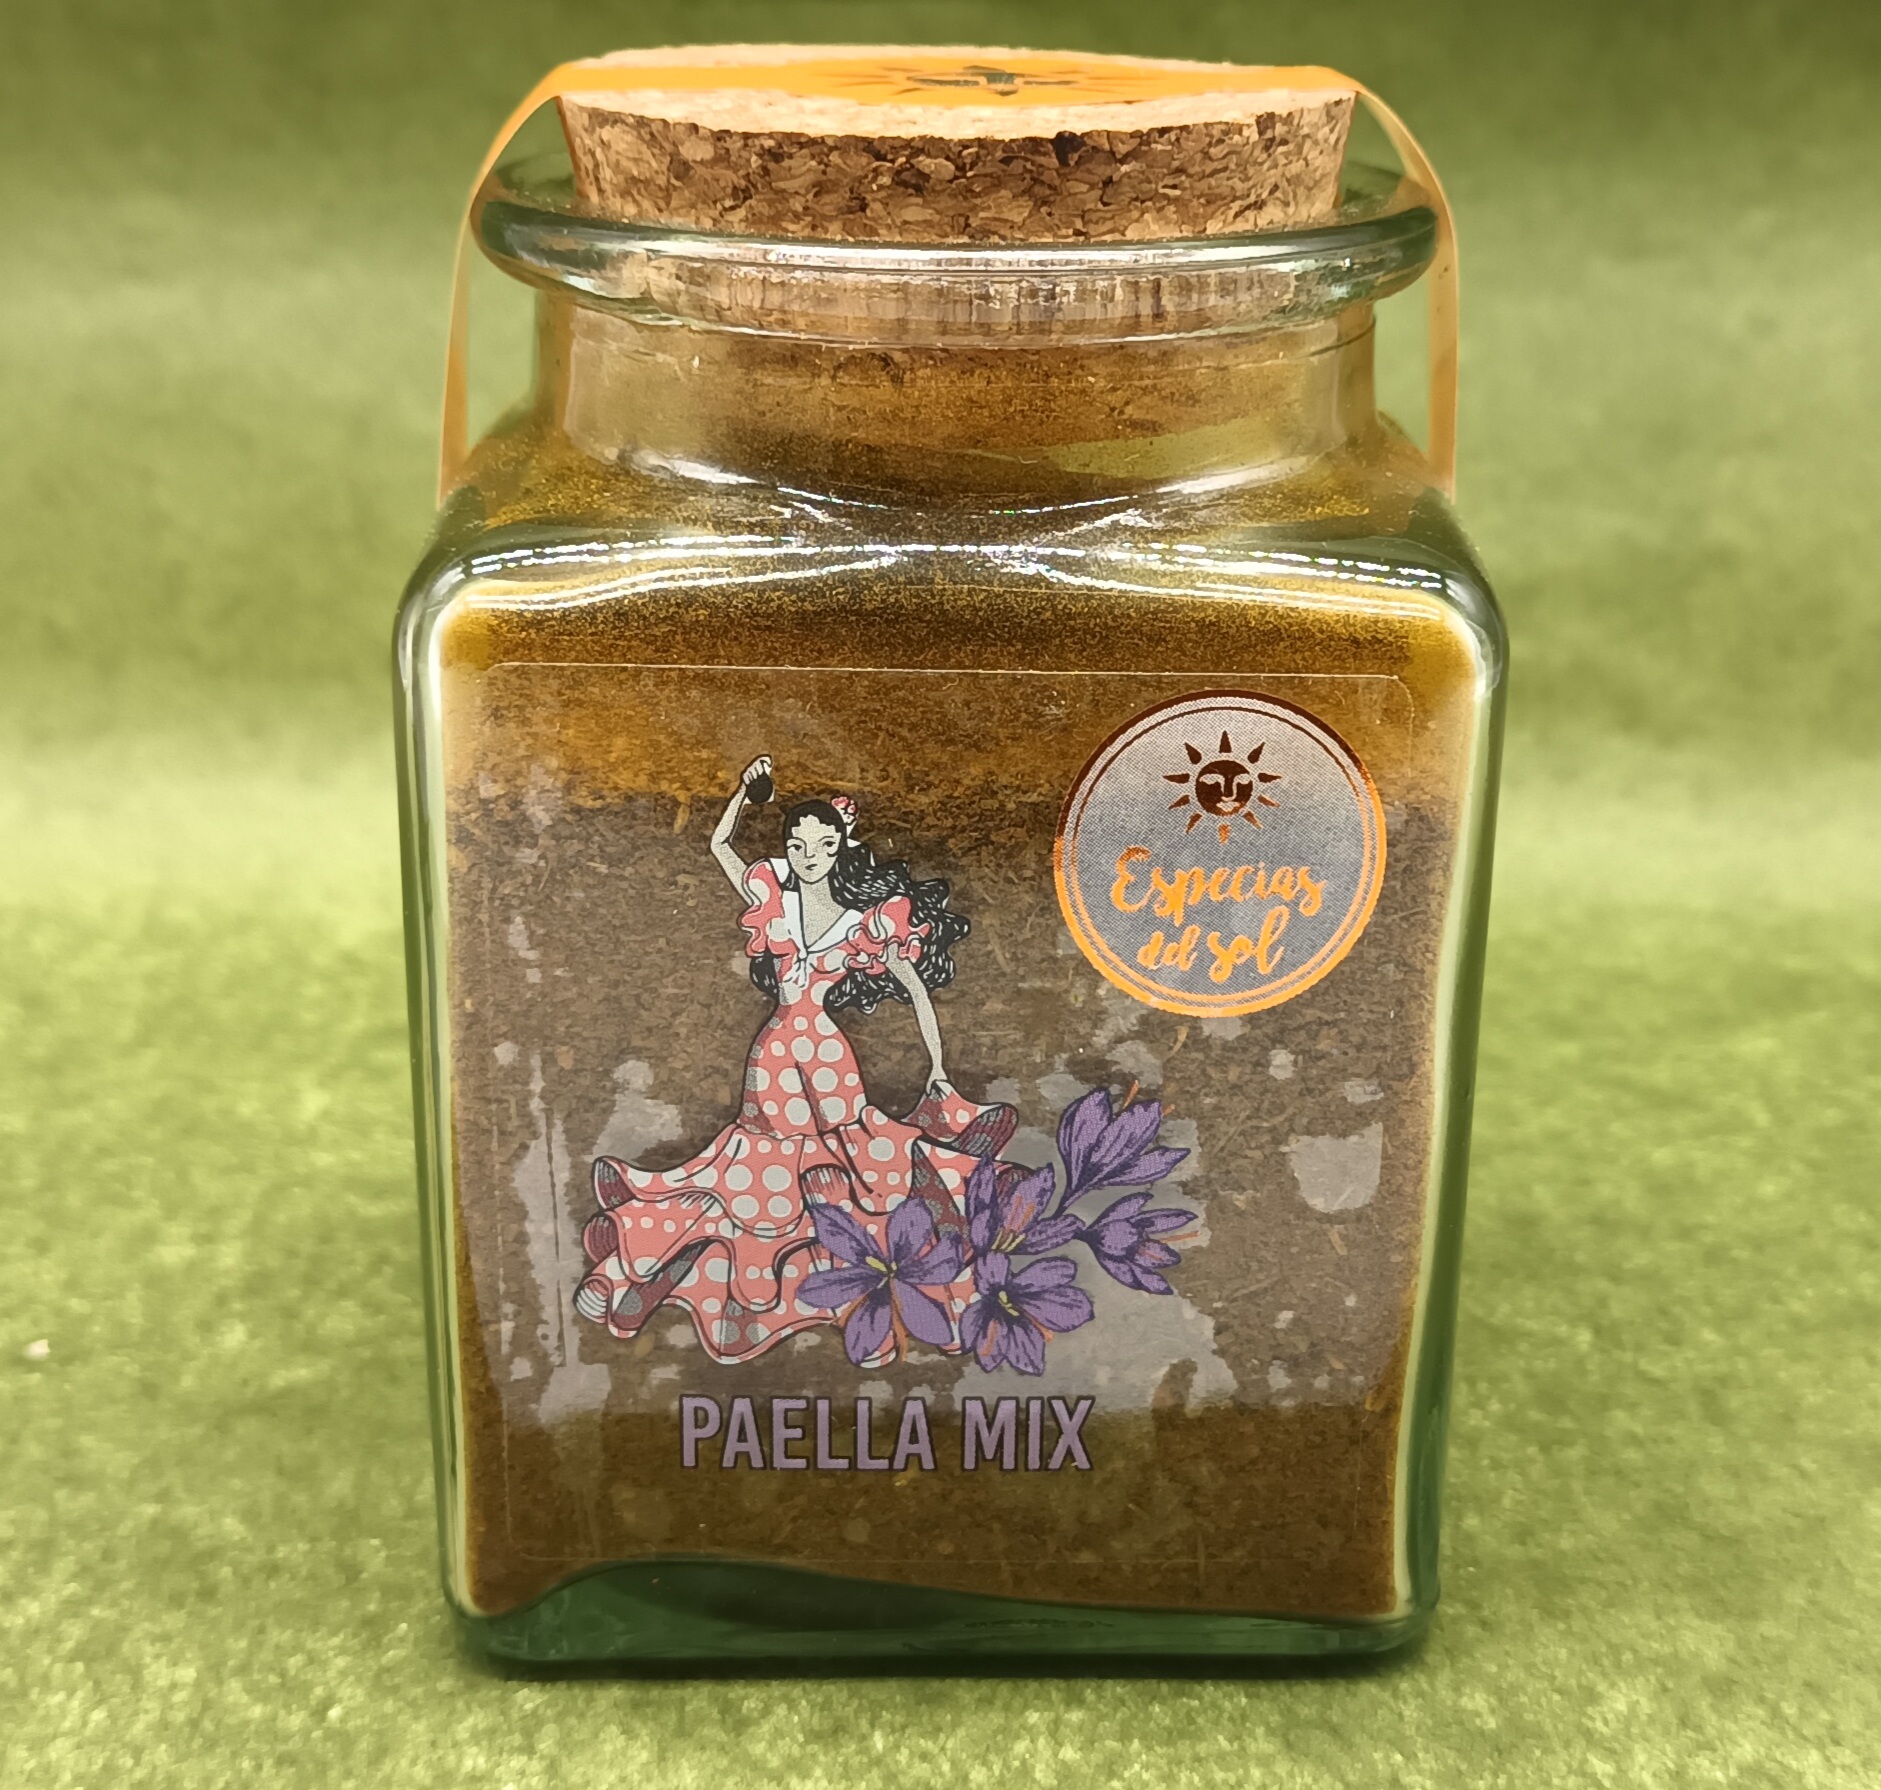 Paella Mix erlesene Gewürz Mischung im Glas, deal zum Würzen von Paella, Reis- oder Fisch Gerichten